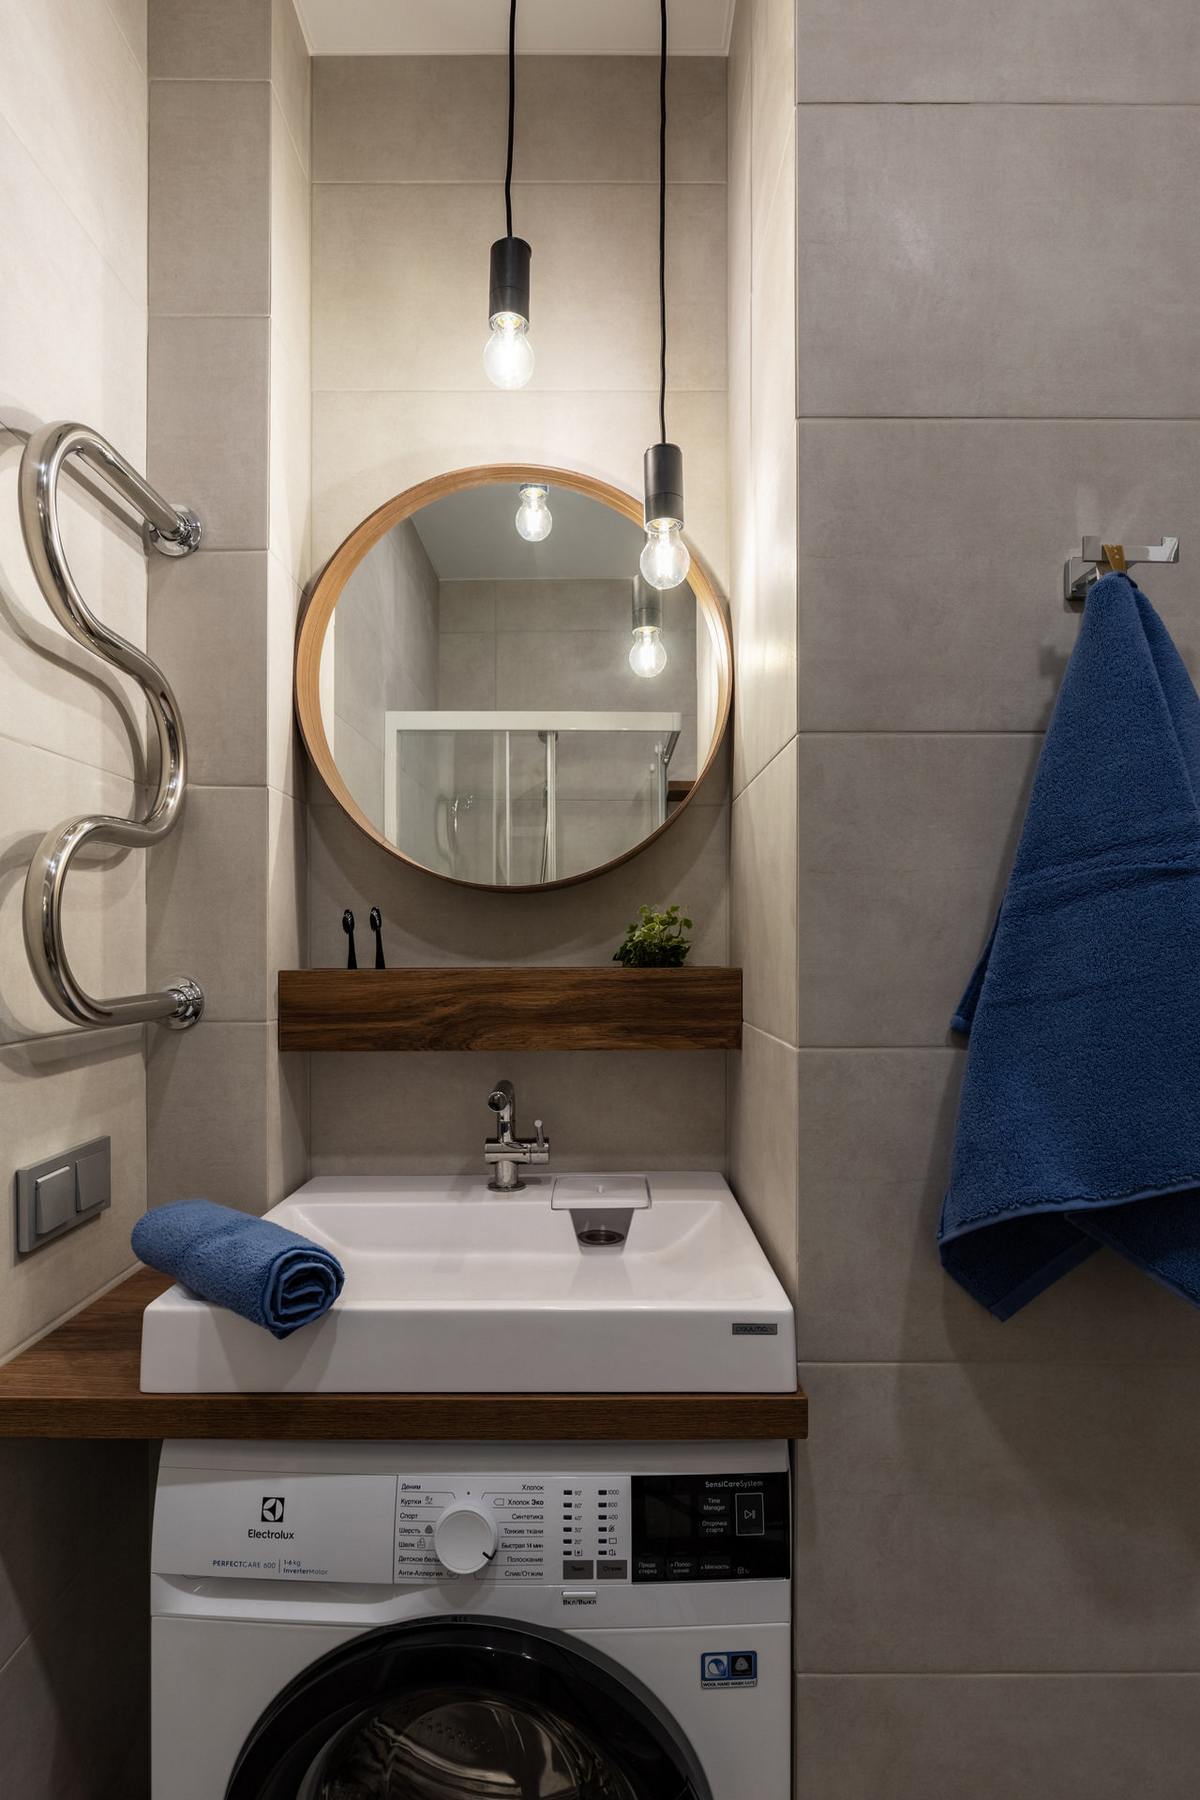 Khu vực phòng tắm nhỏ gọn với bồn rửa, kệ và gương soi bố trí trong hốc tường nhỏ gọn. Máy giặt nhỏ sắp xếp bên dưới bồn rửa, những dây đèn thả trần phá trước gương soi cũng góp phần 'nhân đôi' ánh sáng.